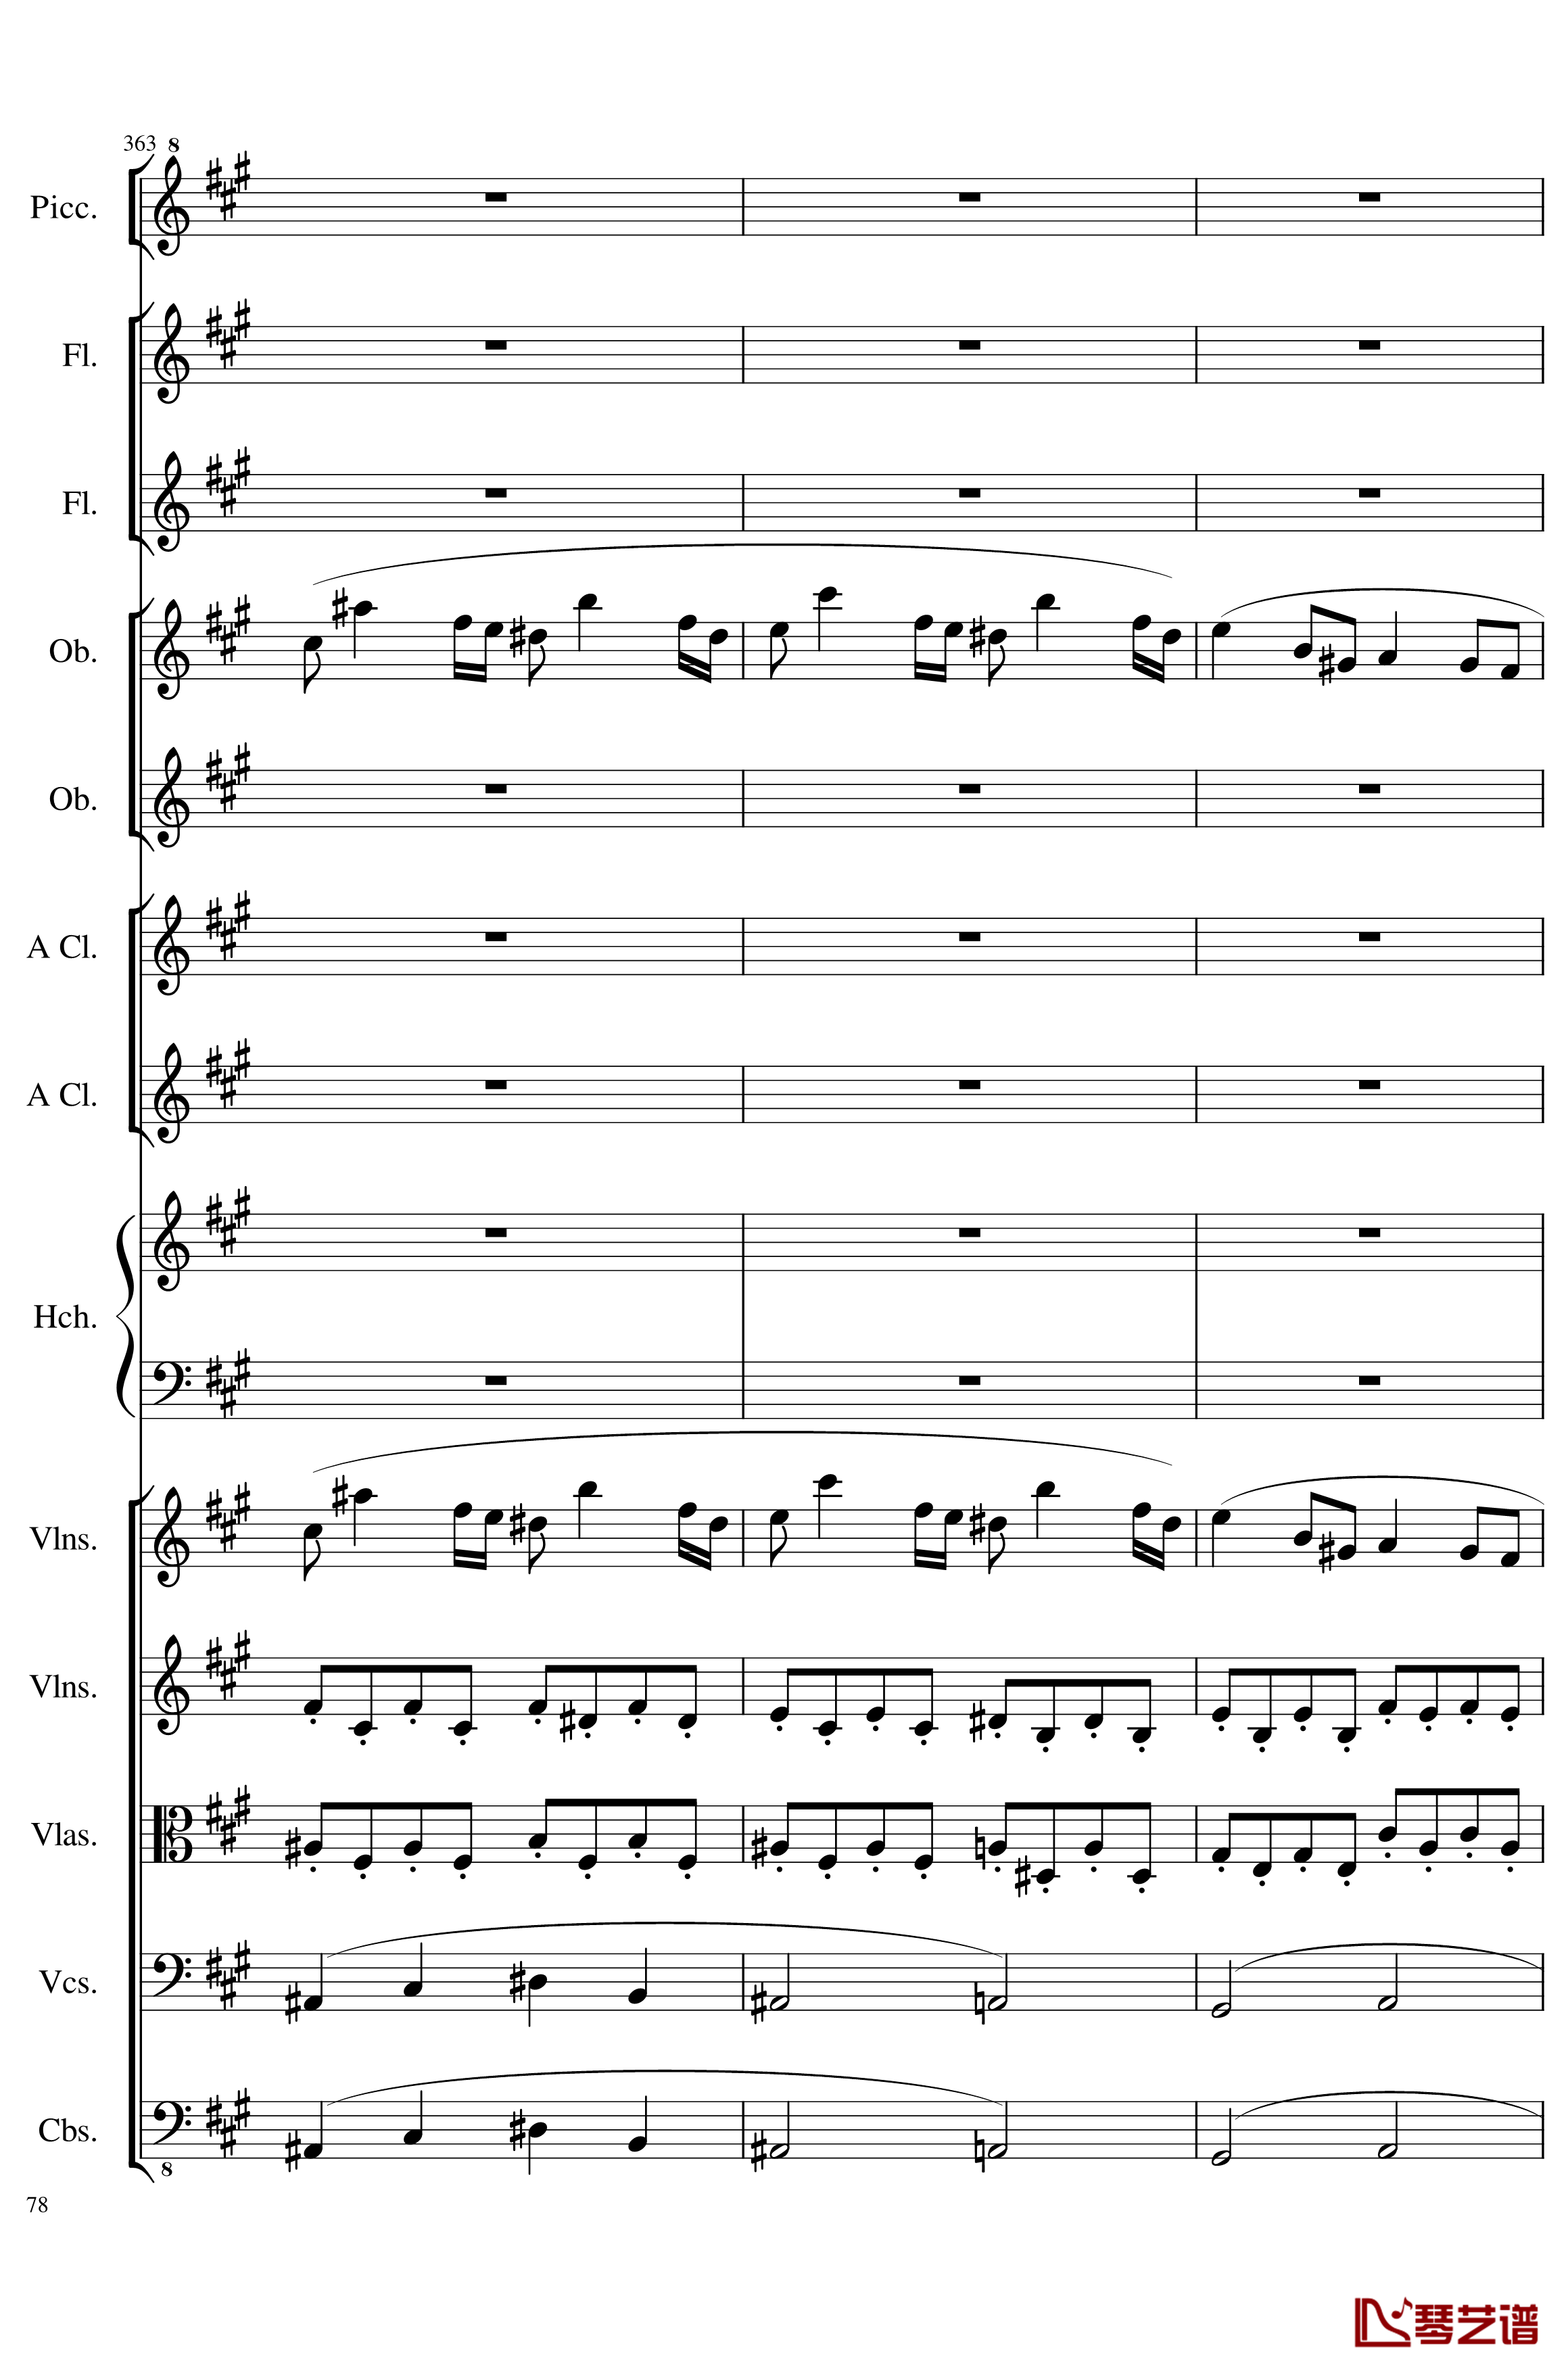 7 Contredanses No.1-7, Op.124钢琴谱-7首乡村舞曲，第一至第七，作品124-一个球78